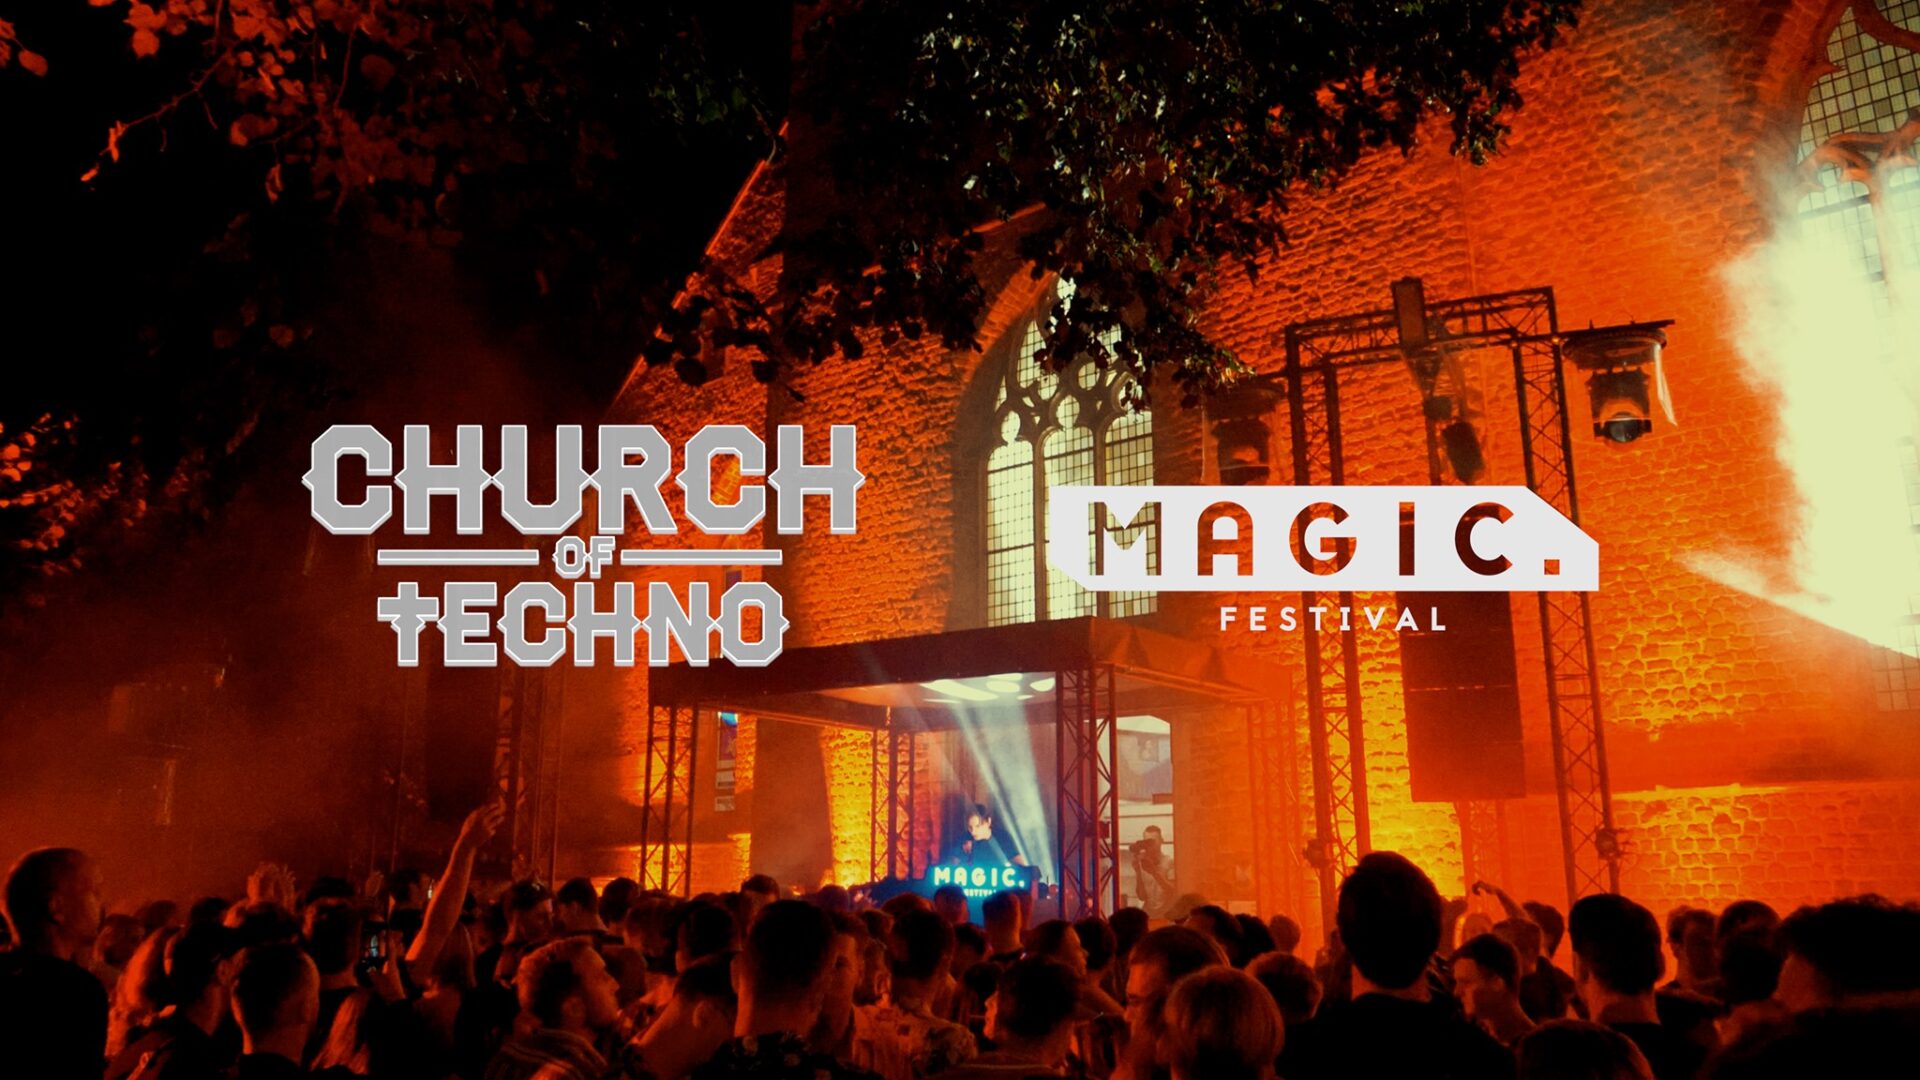 Magic festival presents: Church of Techno